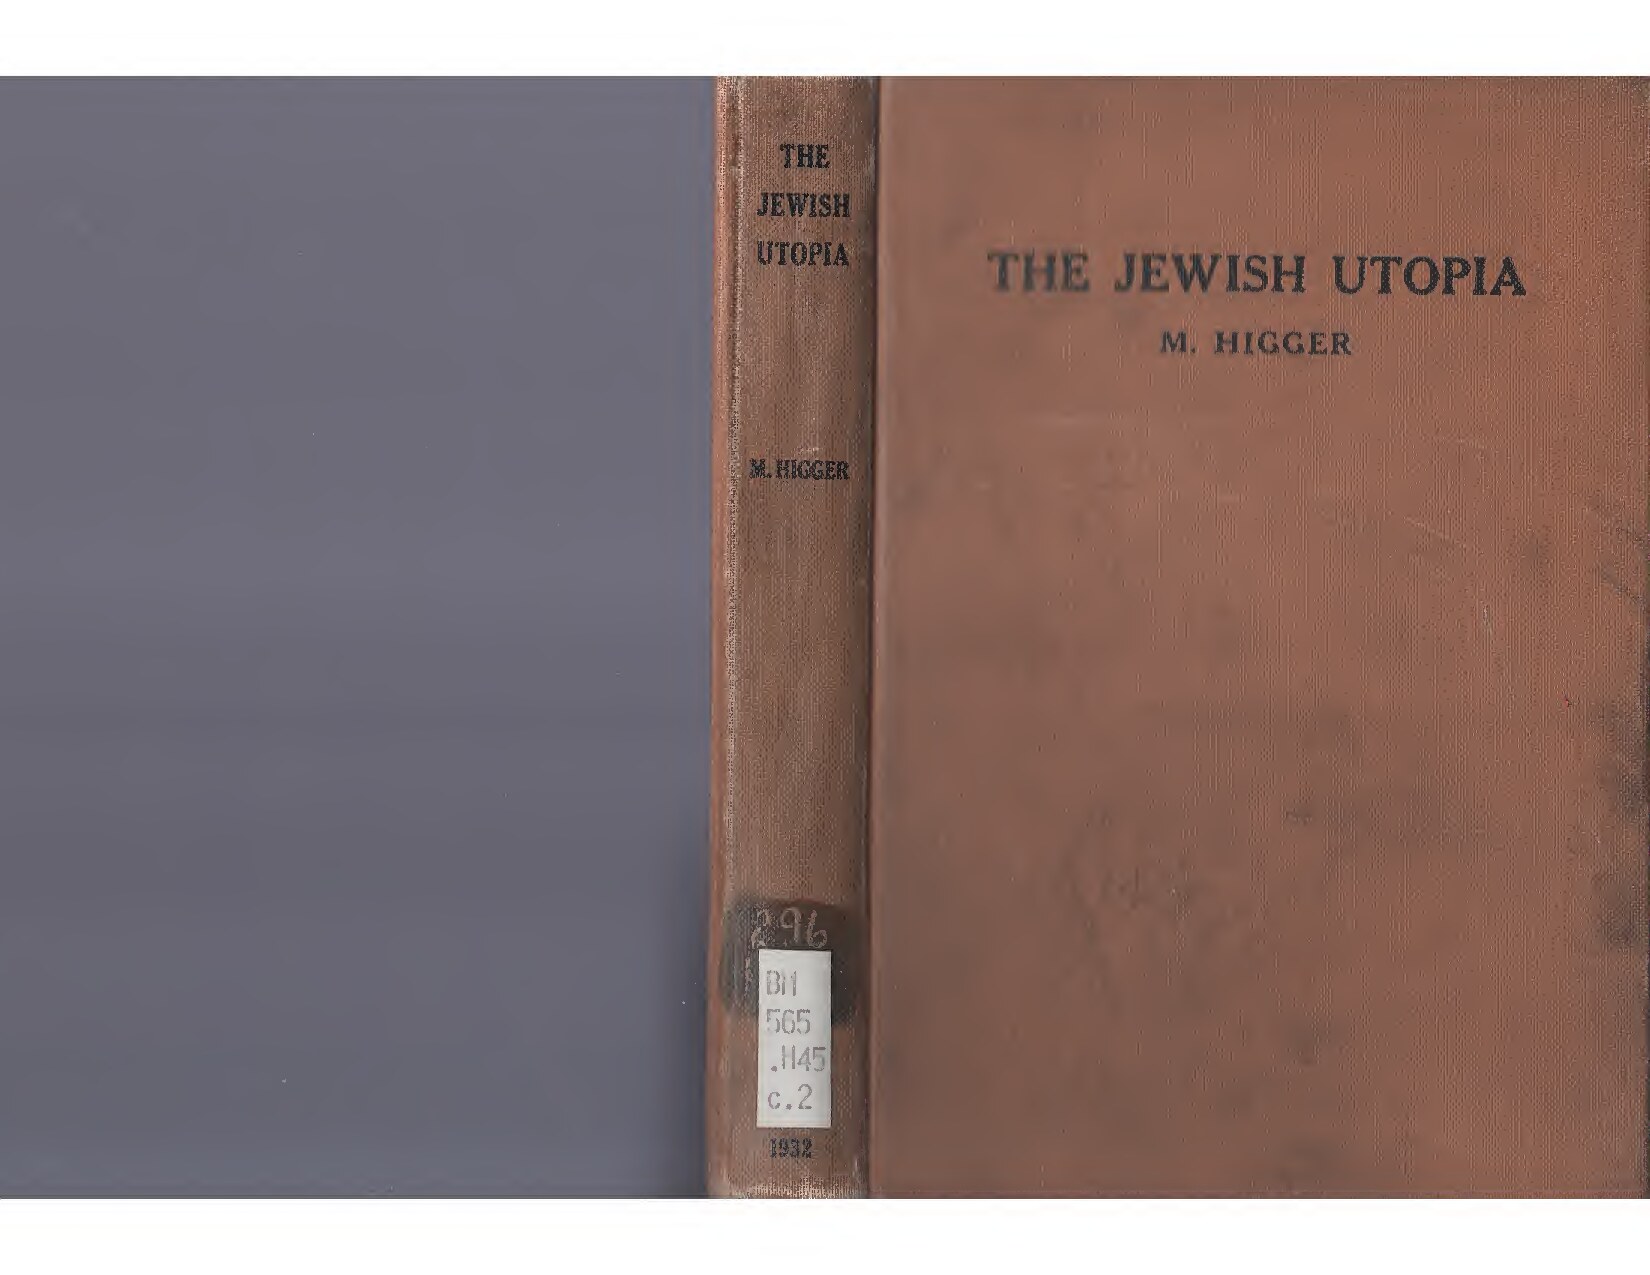 The Jewish Utopia